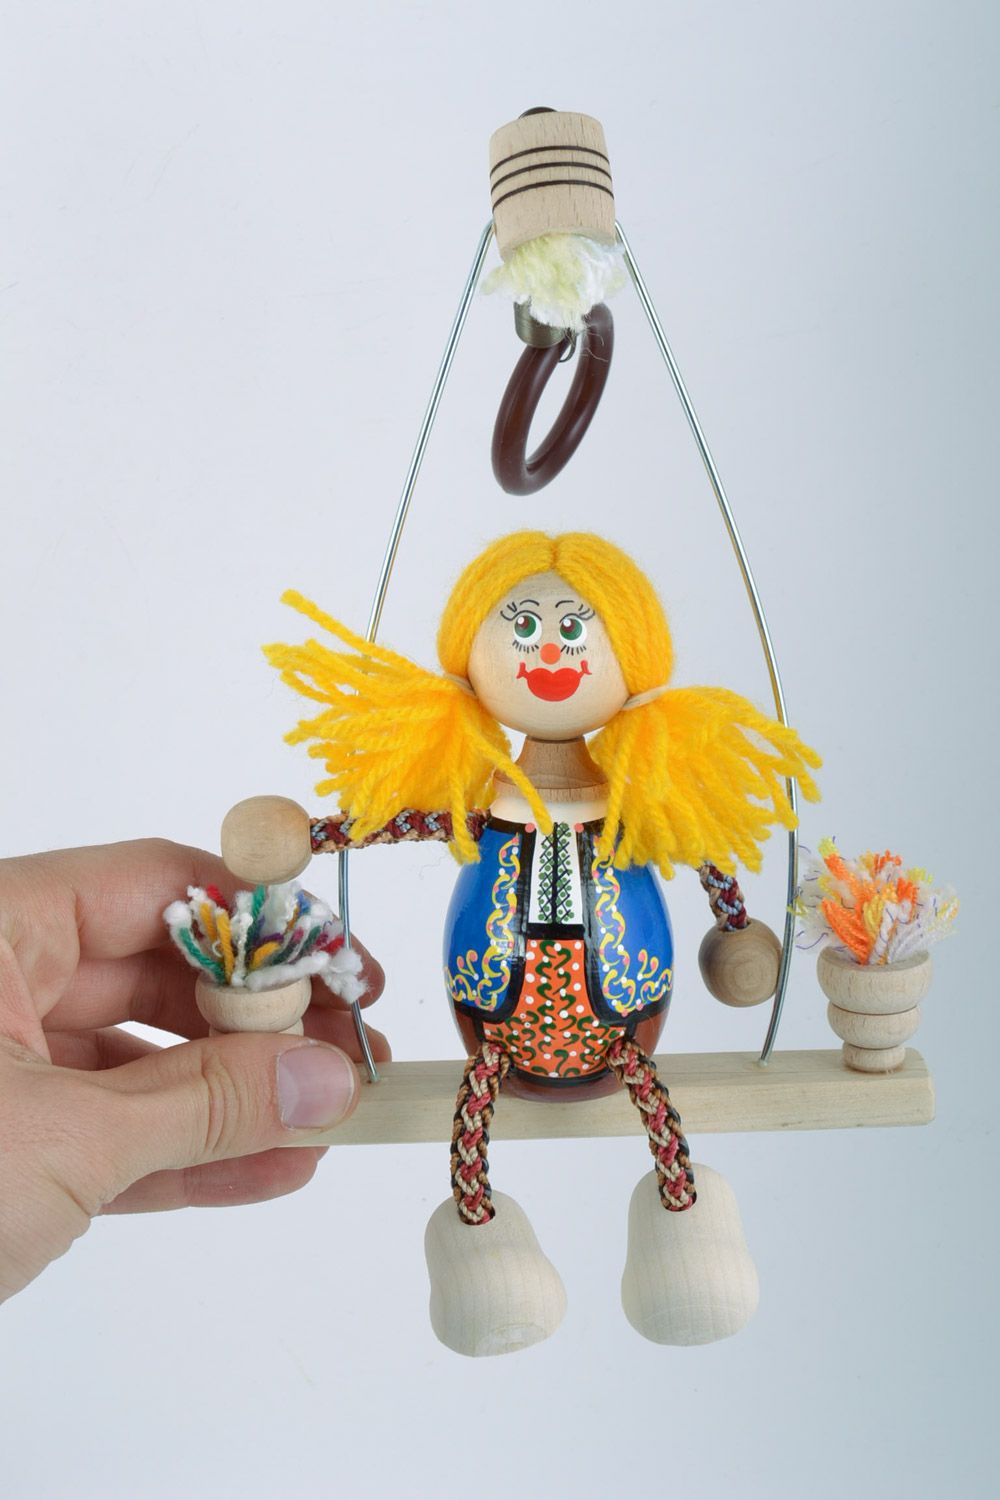 Hanmdade Öko Spielzeug aus Holz Mädchen auf Bank mit Bemalung samt unschädliche Farben foto 2